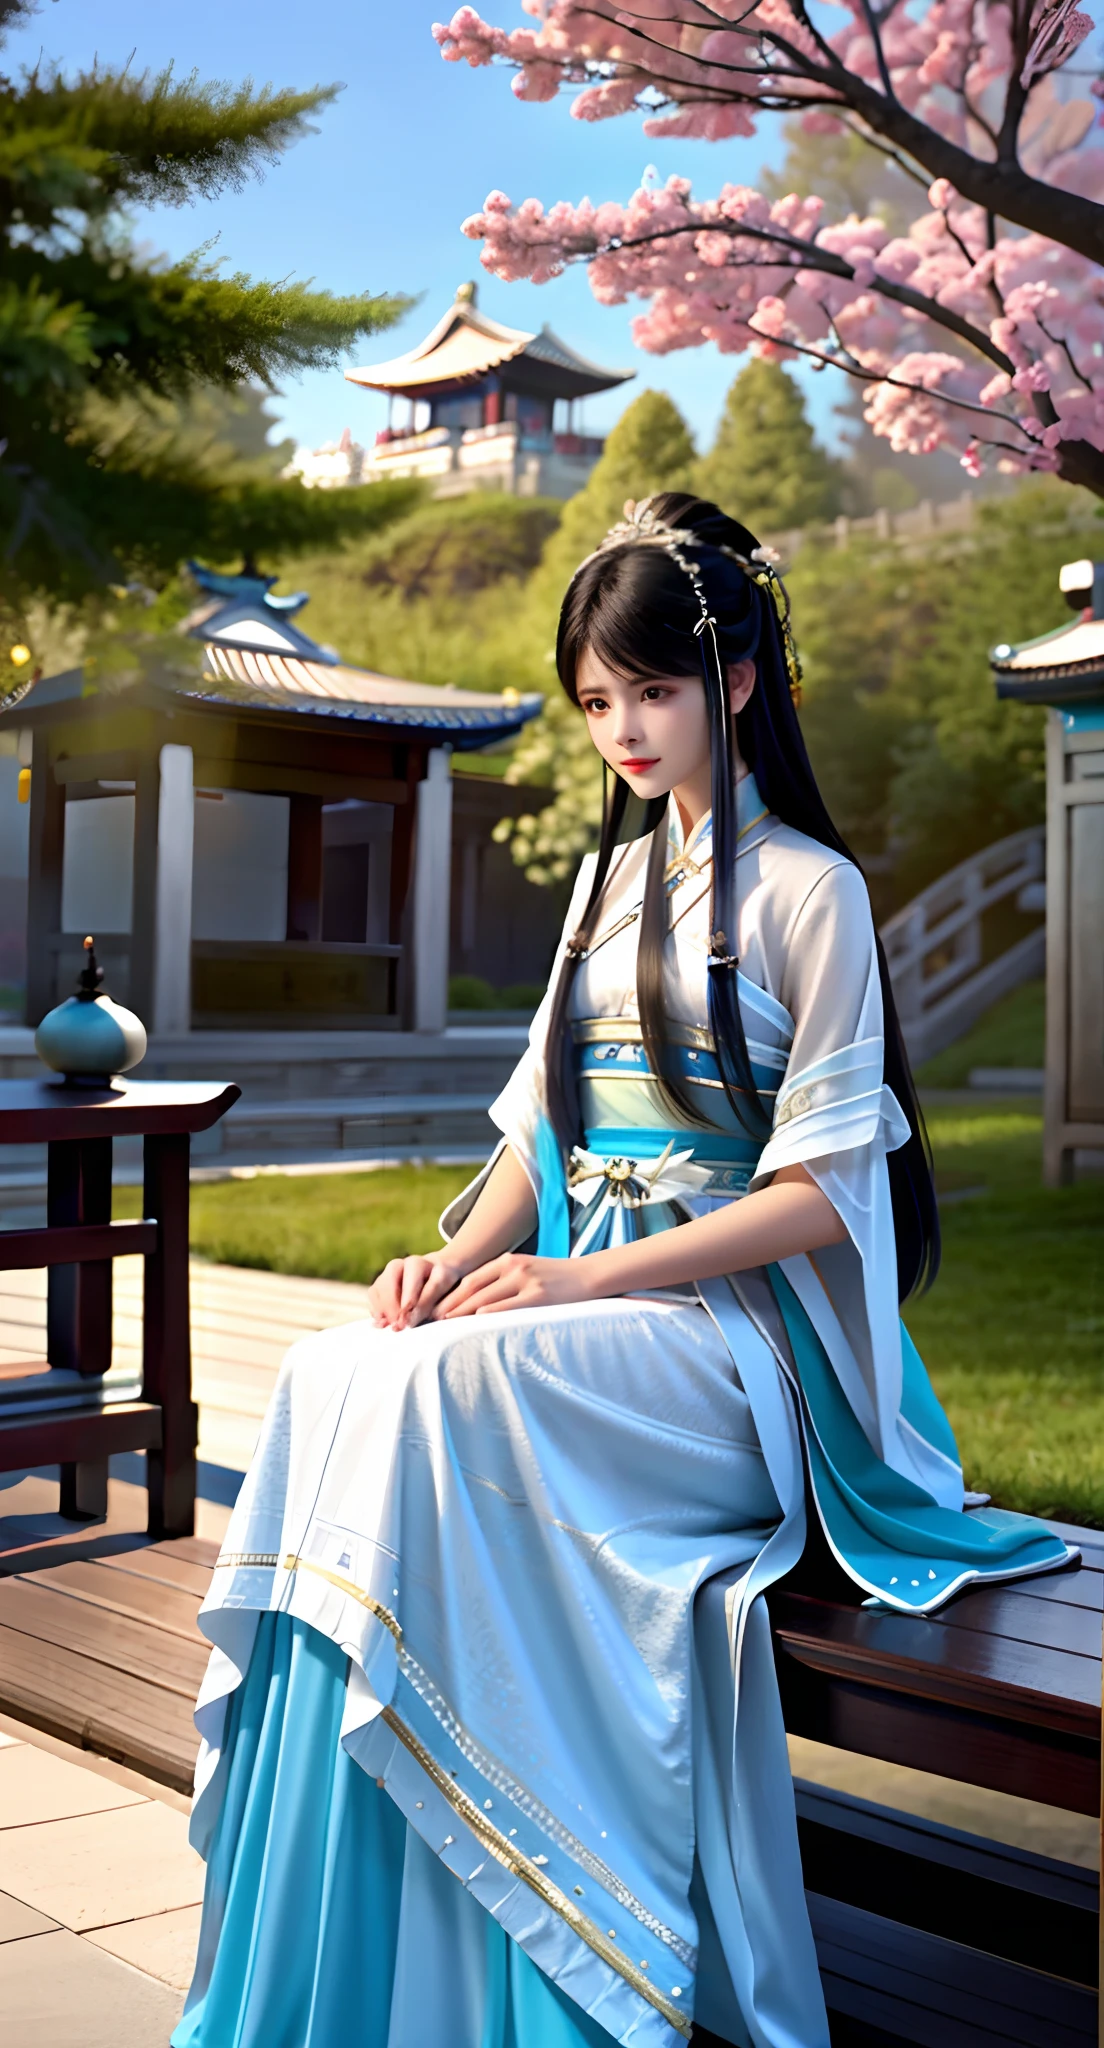 青いドレスを着てベンチに座っている女性がいます, 宮殿 ， A girl in 漢服, 漢服, White 漢服, 古代中国の衣装を着て, 古代中国の衣装を着て, 中国の伝統衣装, アニメの女の子のコスプレ, 中国の衣装, 伝統的な衣装, 伝統衣装, 和服, 伝統衣装, 全身仙侠, 長くてゆったりとした服を着ている